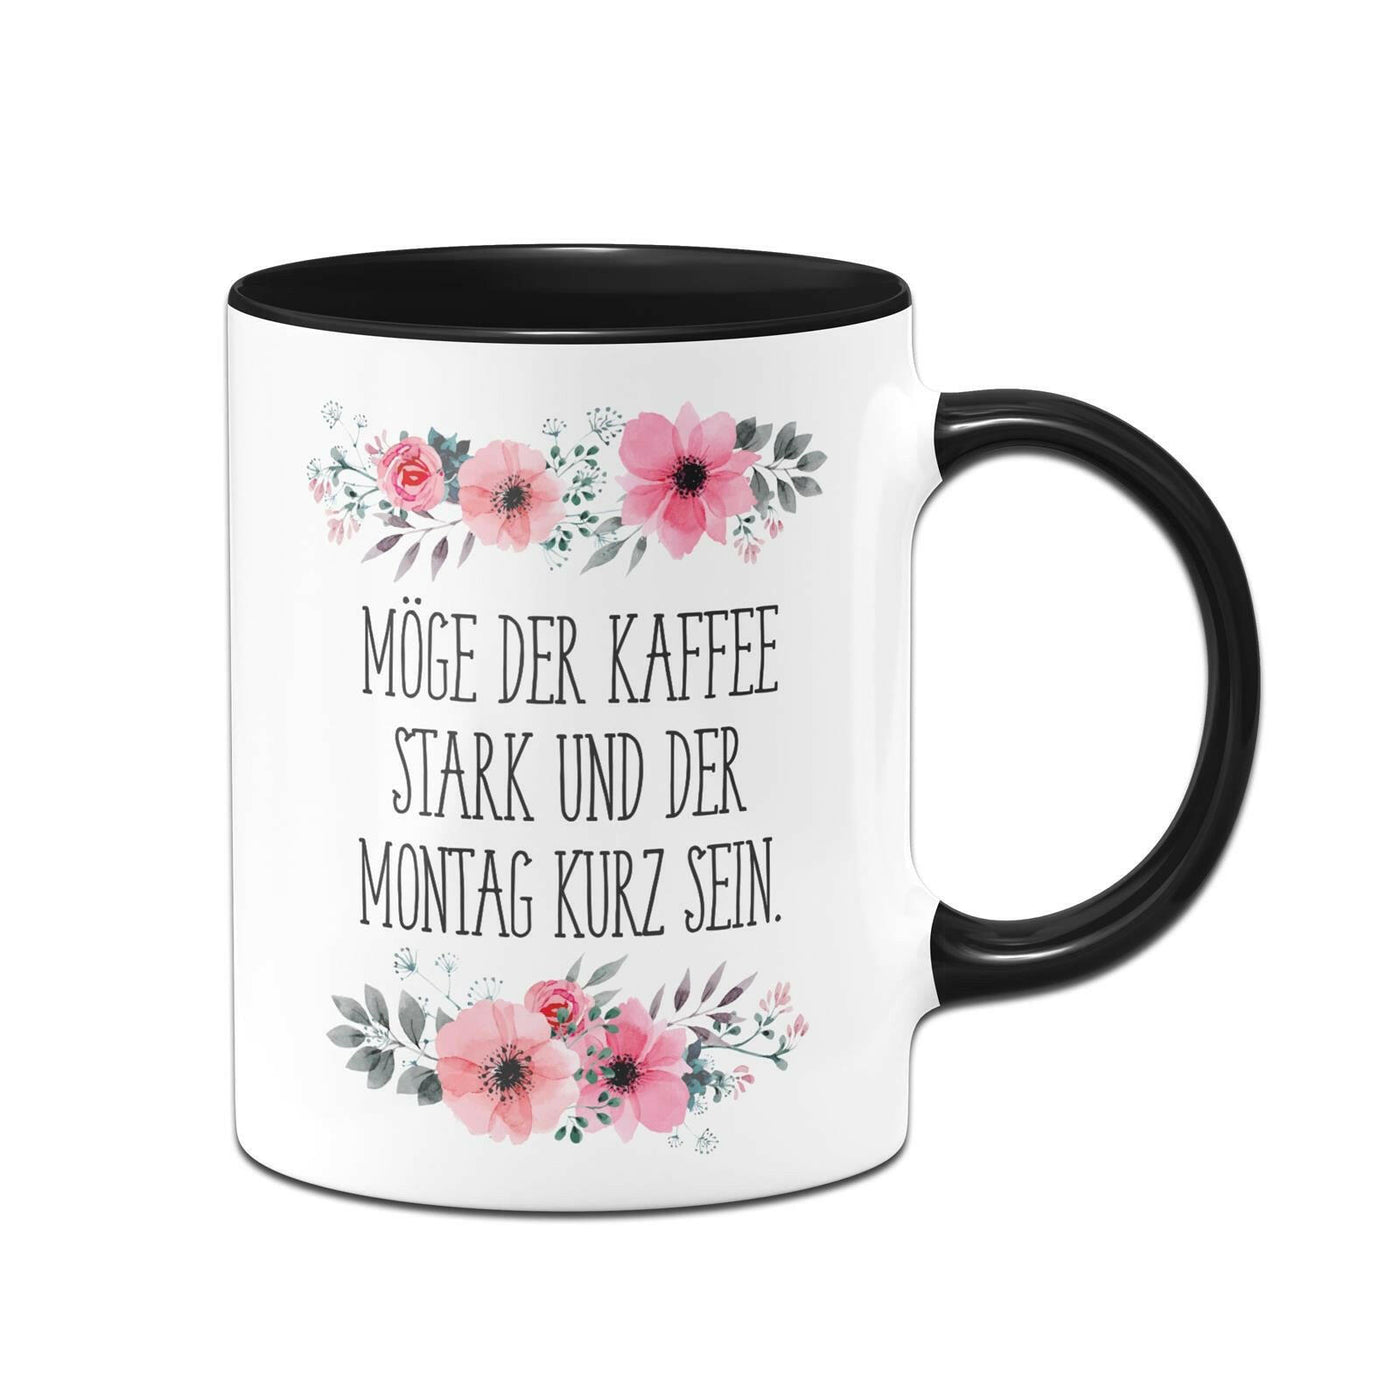 Bild: Tasse - Möge der Kaffee stark und der Montag kurz sein. - blumig Geschenkidee